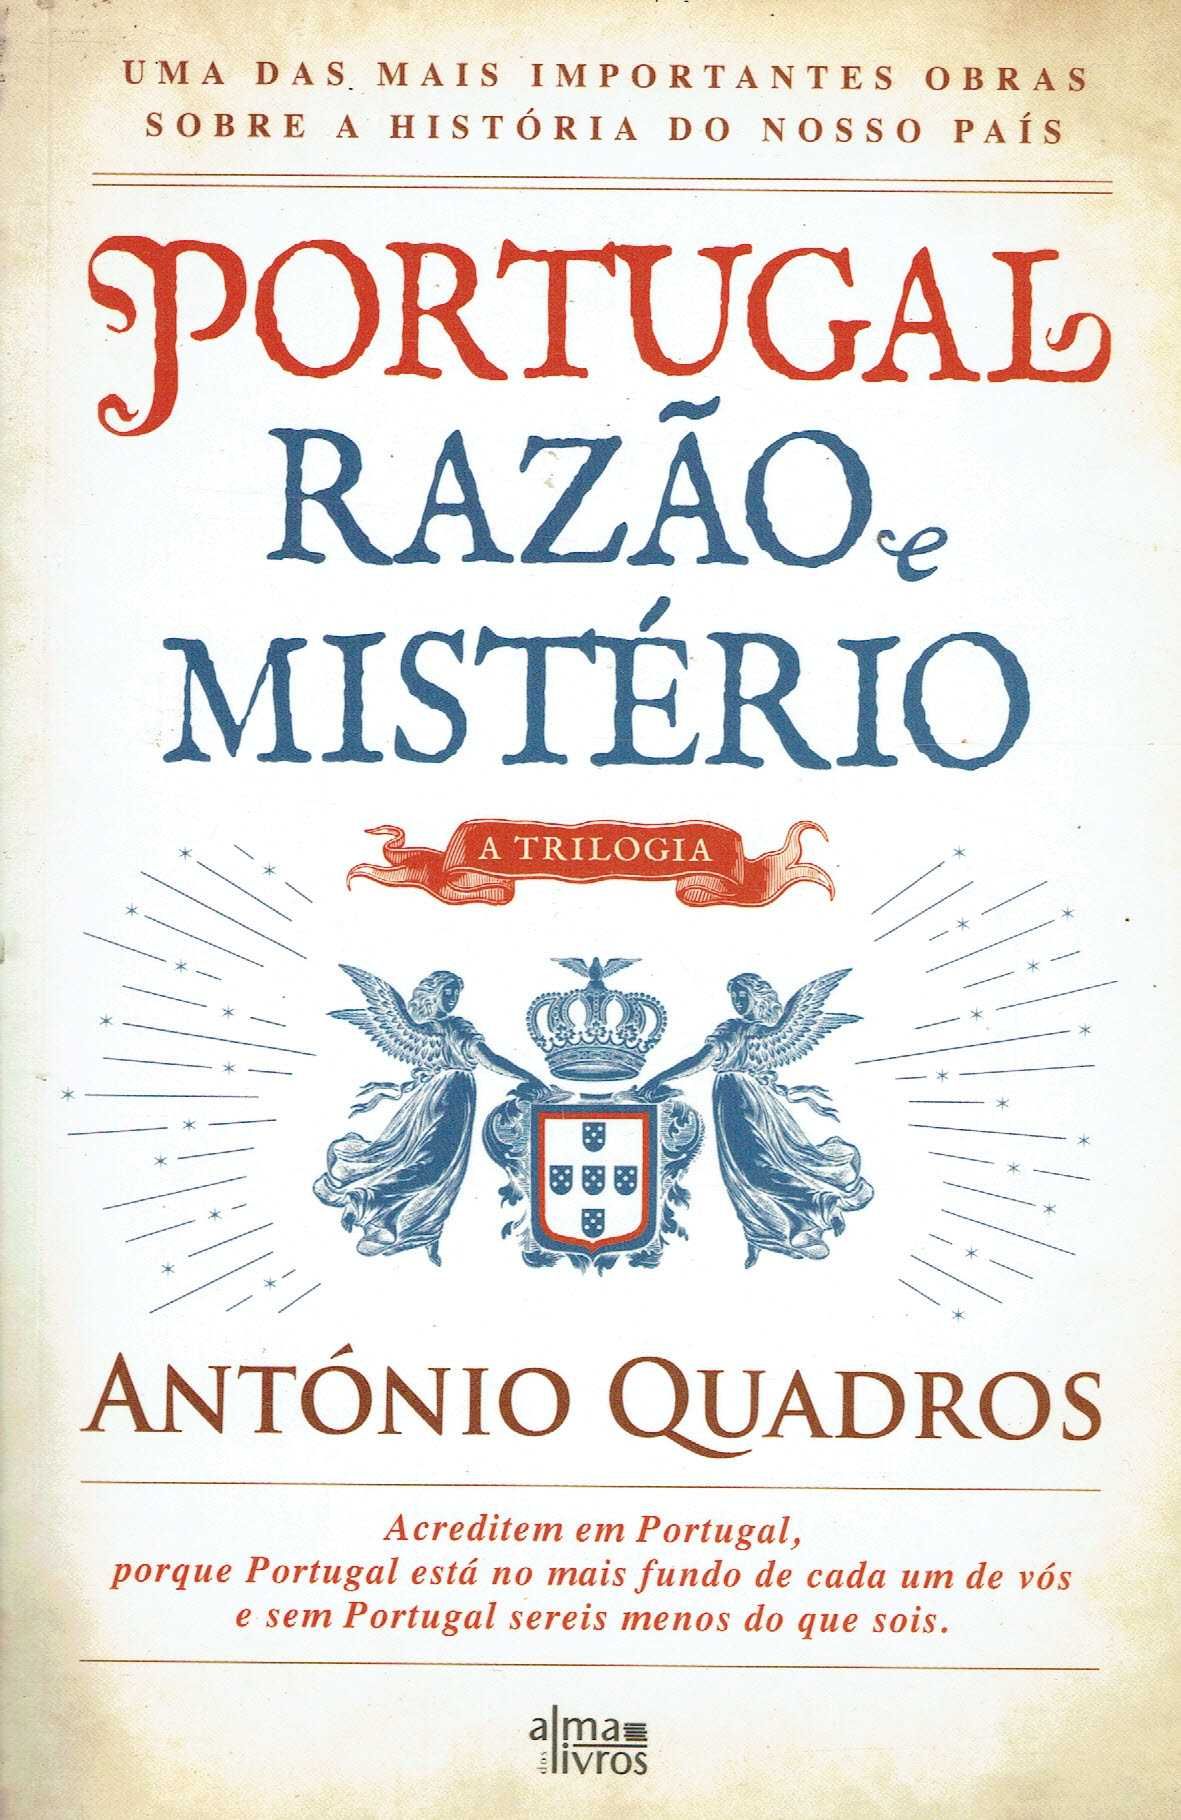 15276

Portugal, Razão e Mistério
de António Quadros